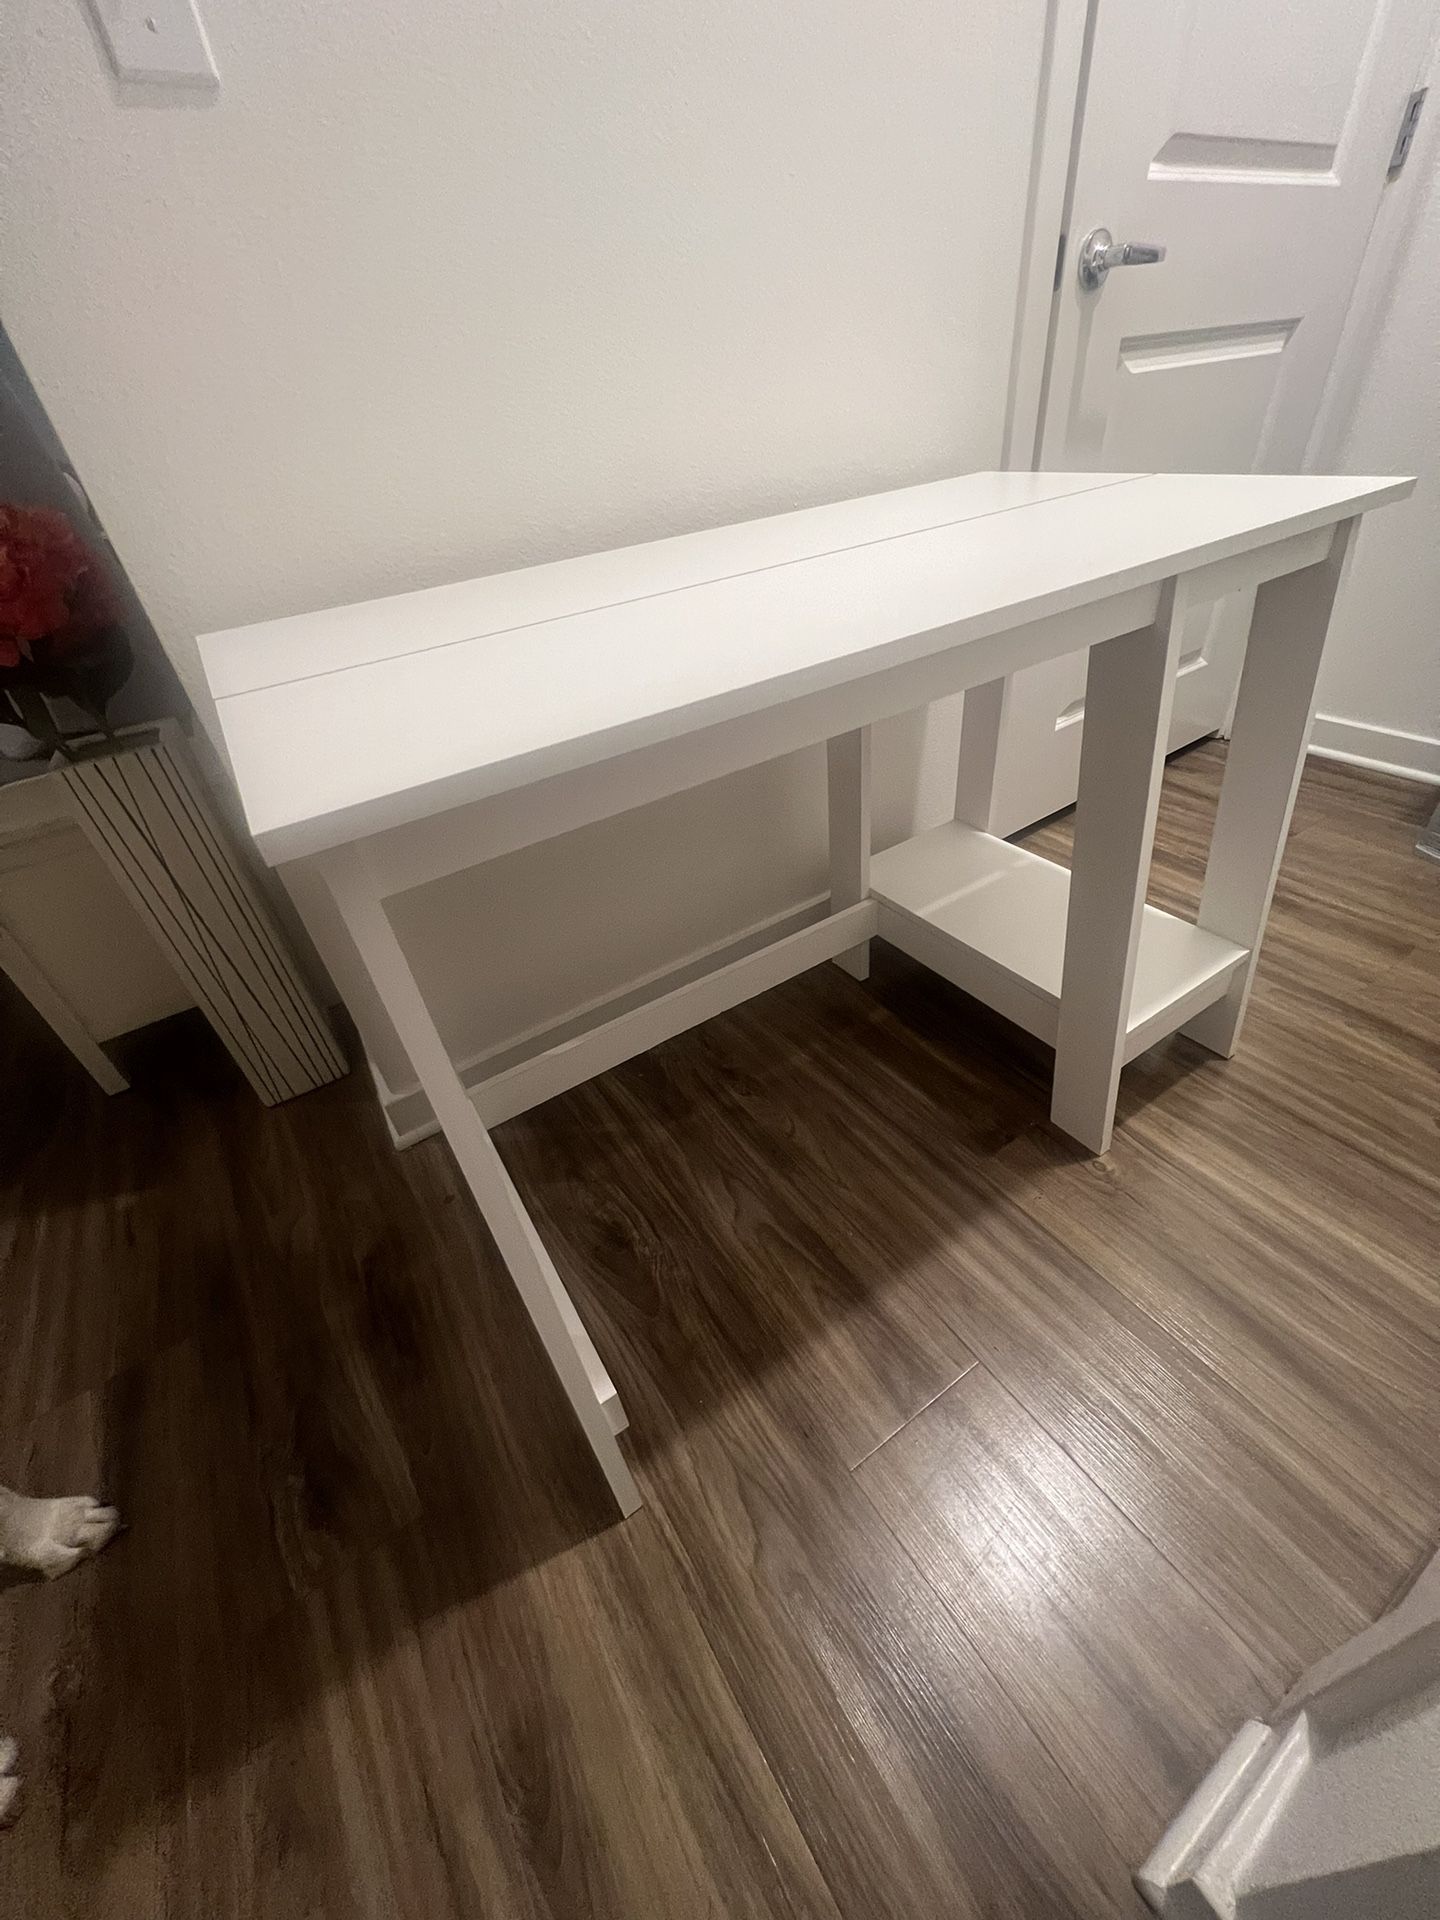 Desk - White (Like New) For $30